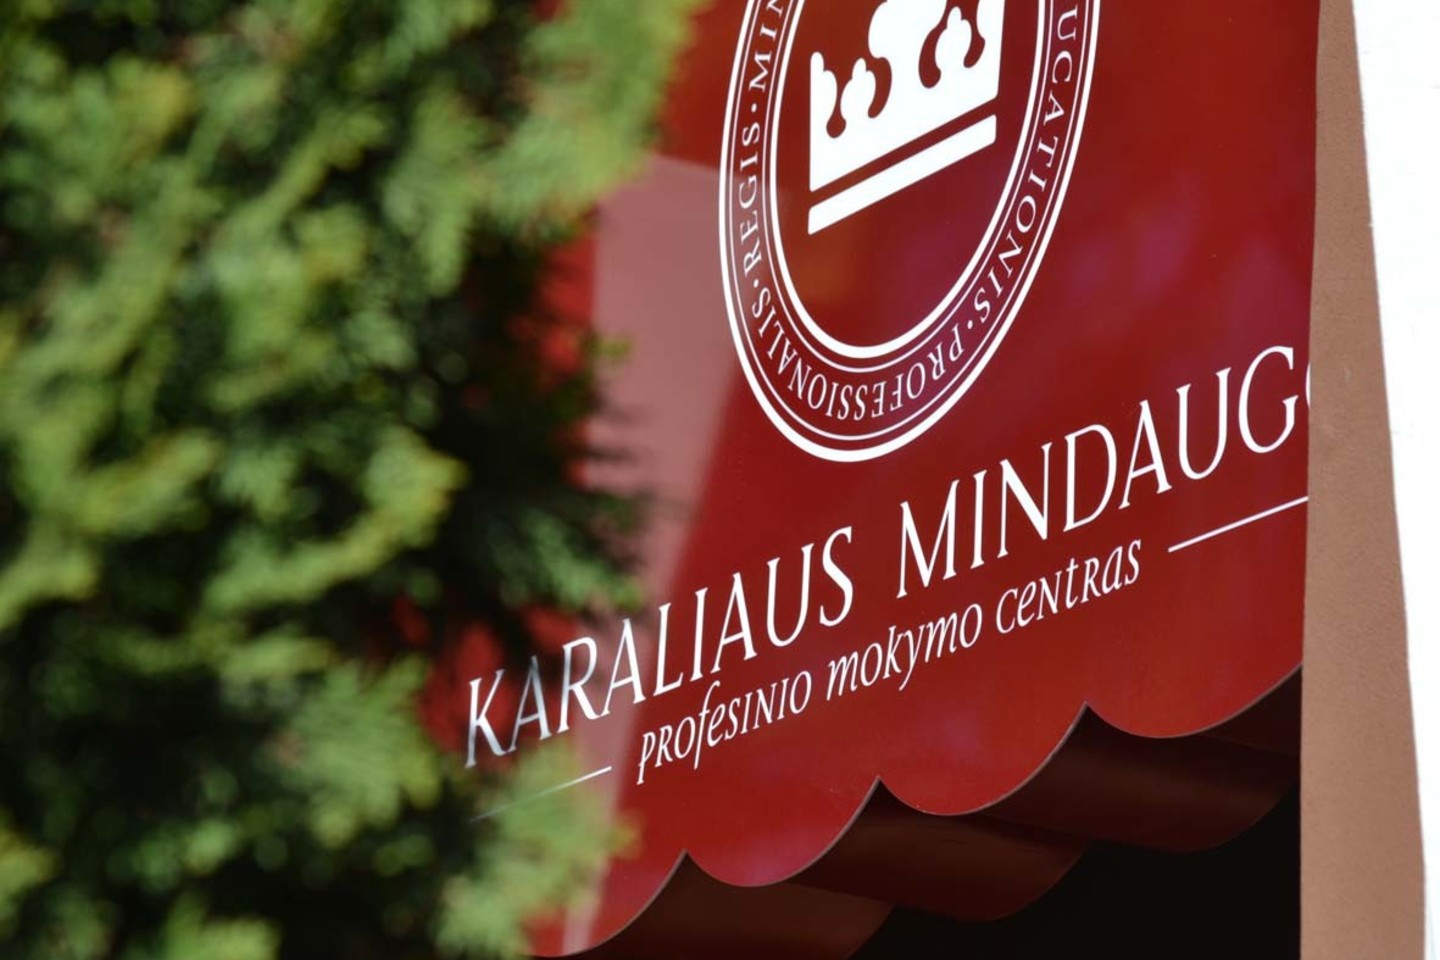 Karaliaus Mindaugo profesinio mokymo centras yra įsikūręs Kaune, tačiau su padaliniais Aukštadvaryje, Palangoje, Pervalkoje ir Juknaičiuose. <br>Nuotr. iš LR archyvo 